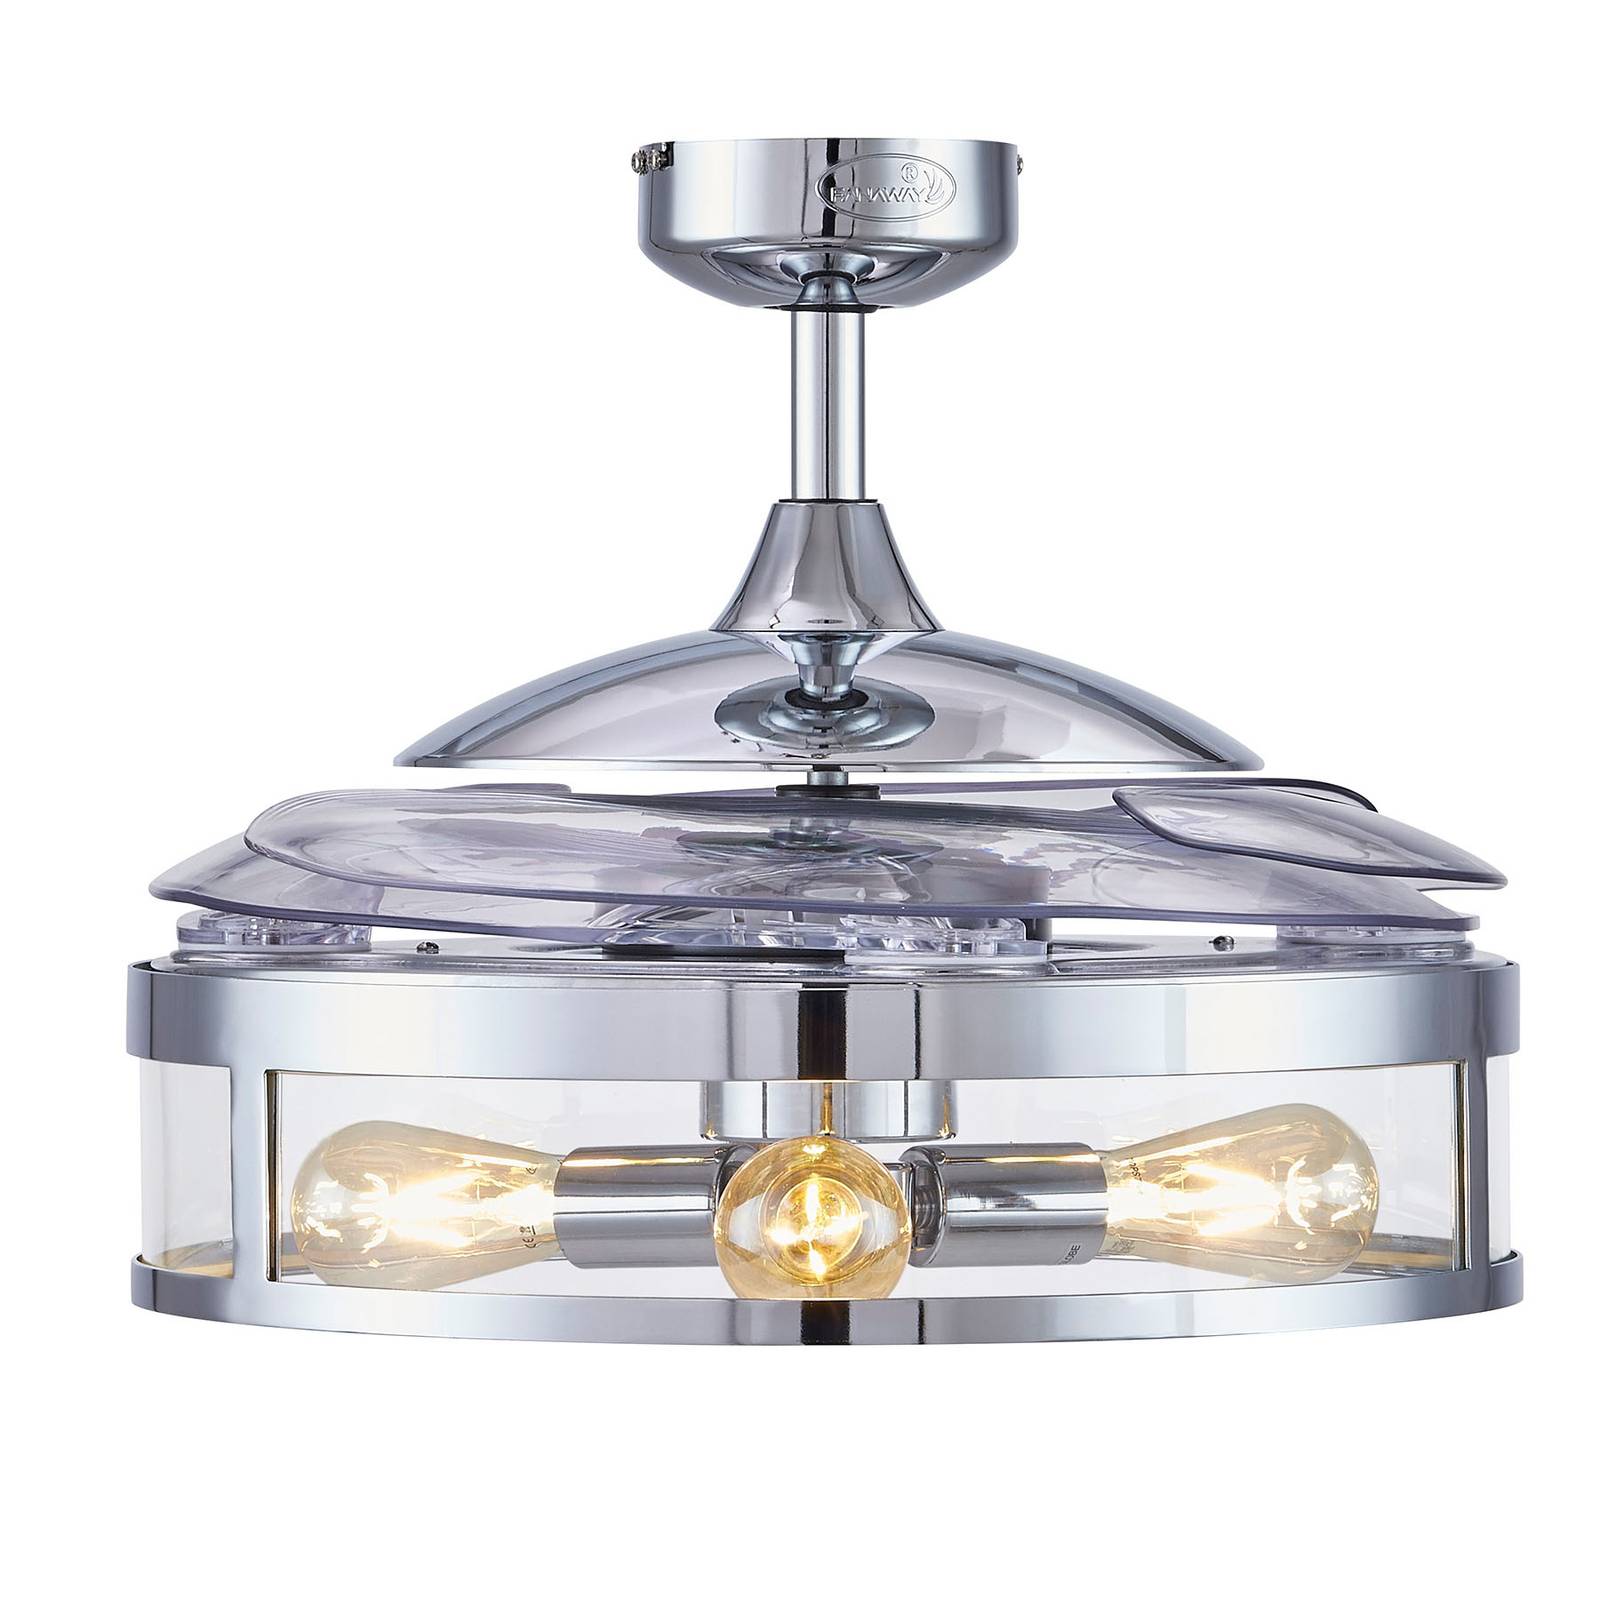 Beacon lighting beacon mennyezeti ventilátor fény fanaway classic krómozott csendes